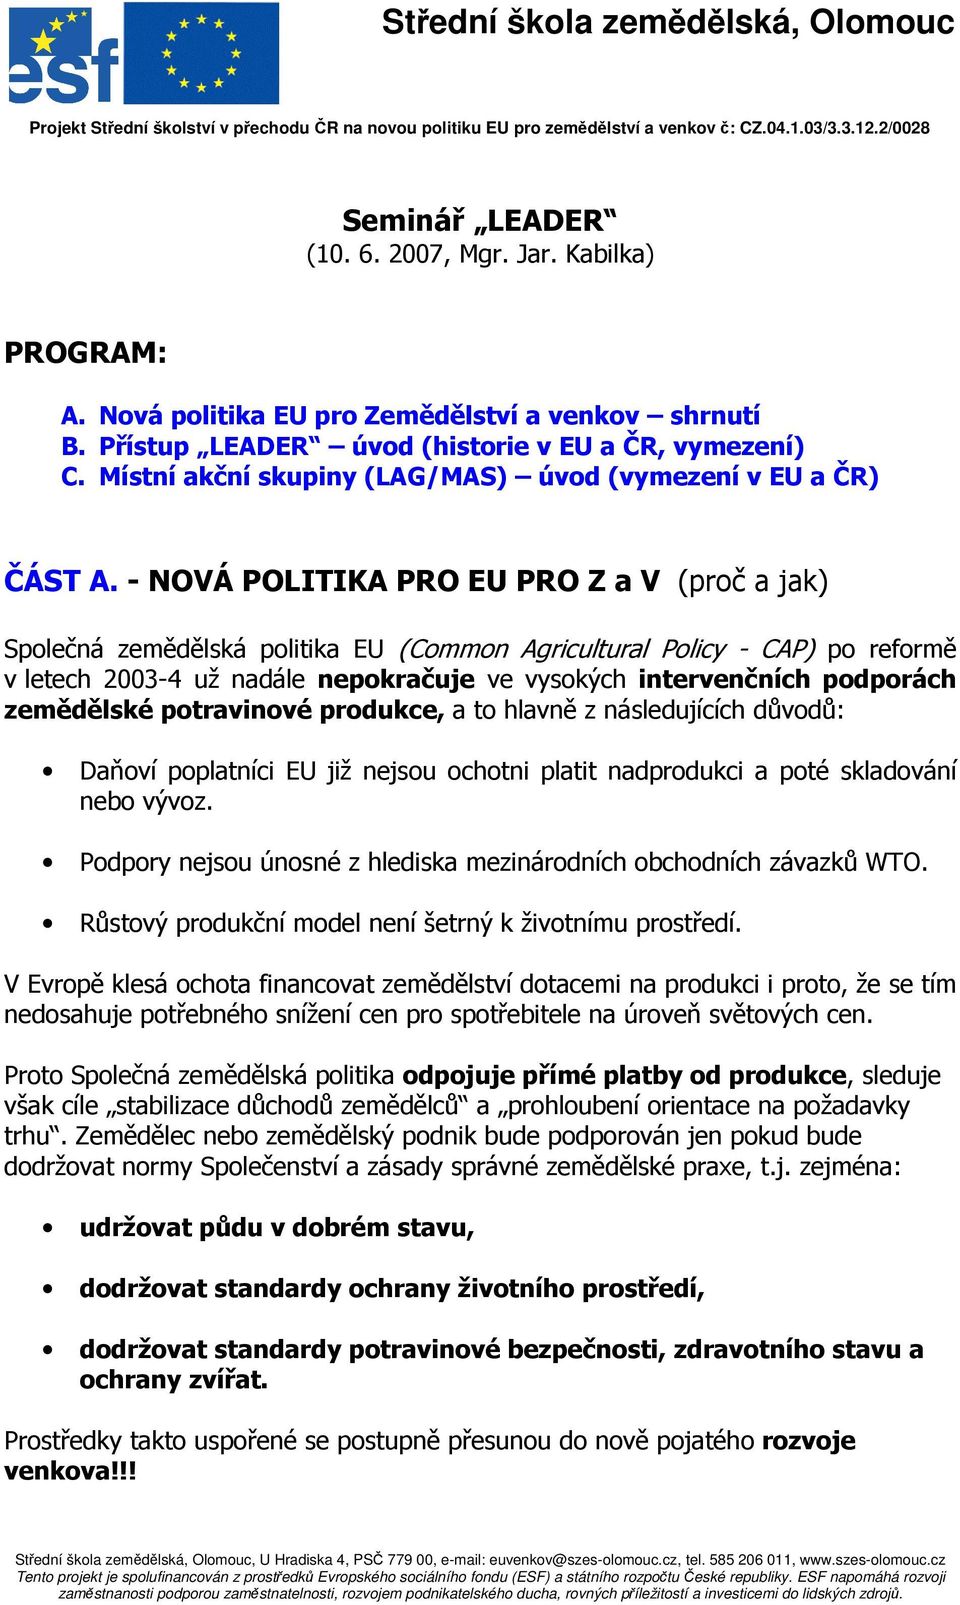 - NOVÁ POLITIKA PRO EU PRO Z a V (proč a jak) Společná zemědělská politika EU (Common Agricultural Policy - CAP) po reformě v letech 2003-4 už nadále nepokračuje ve vysokých intervenčních podporách